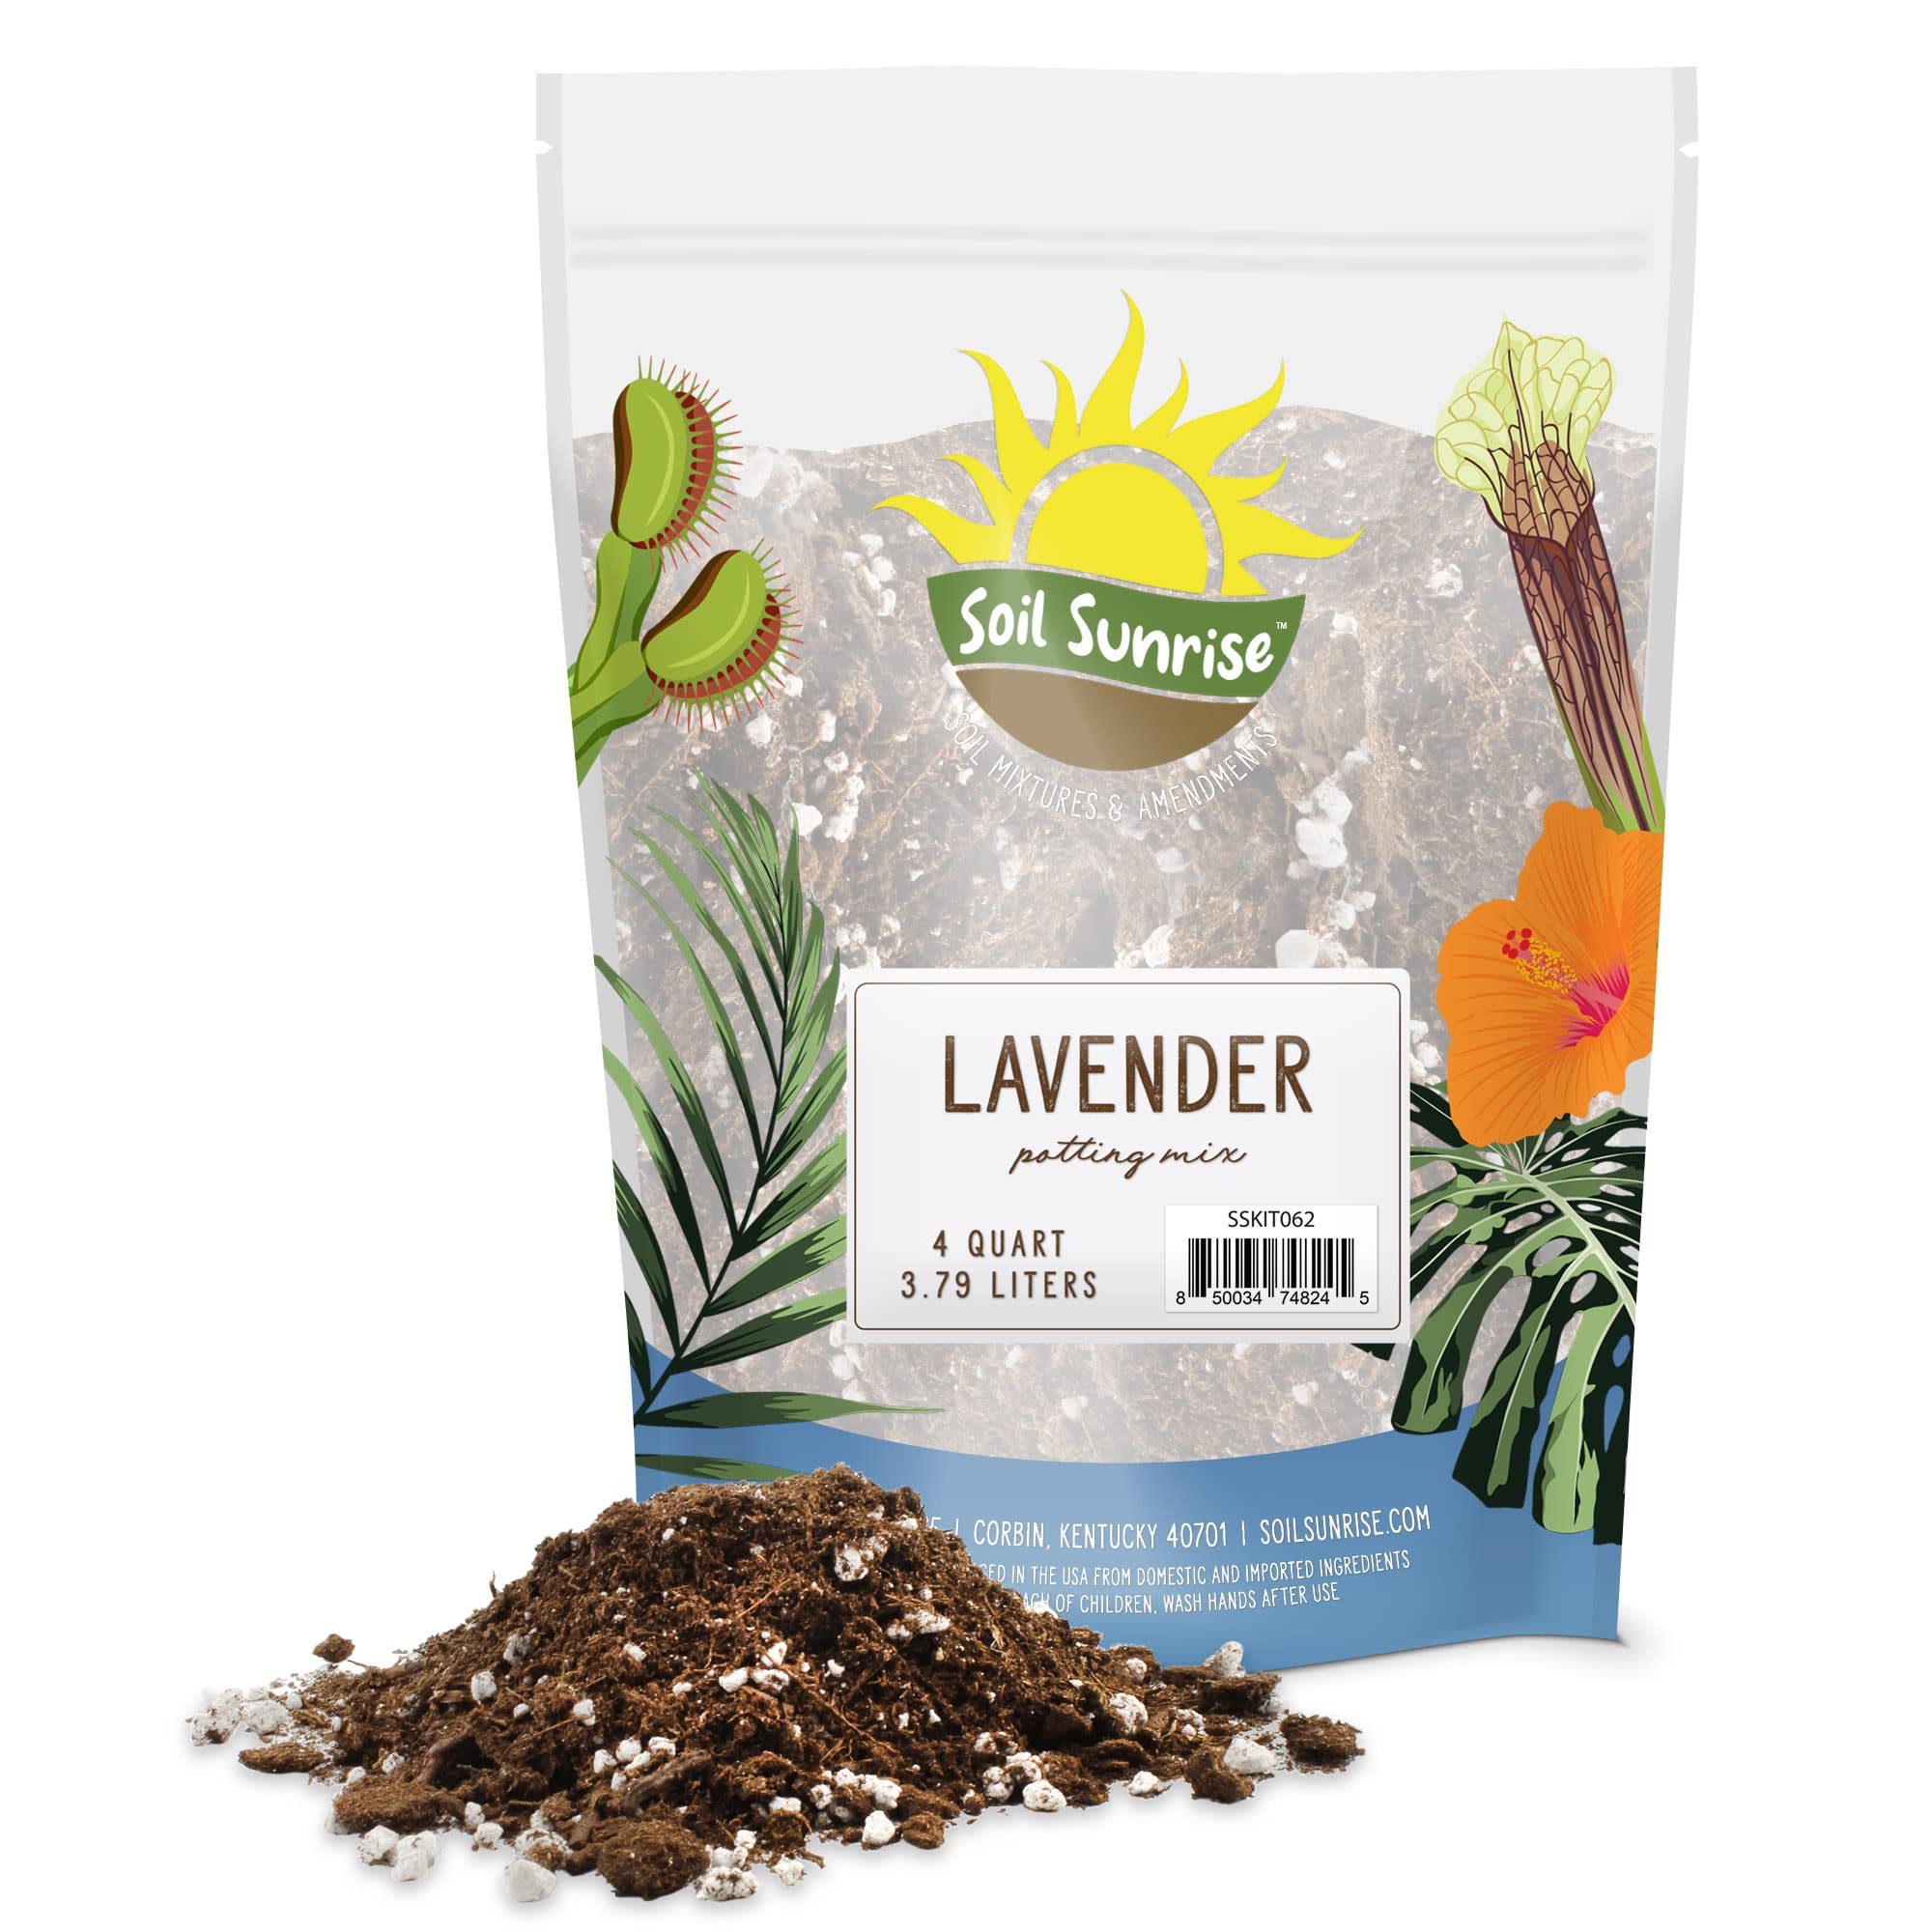 Soil Sunrise Lavender Potting Soil Mix